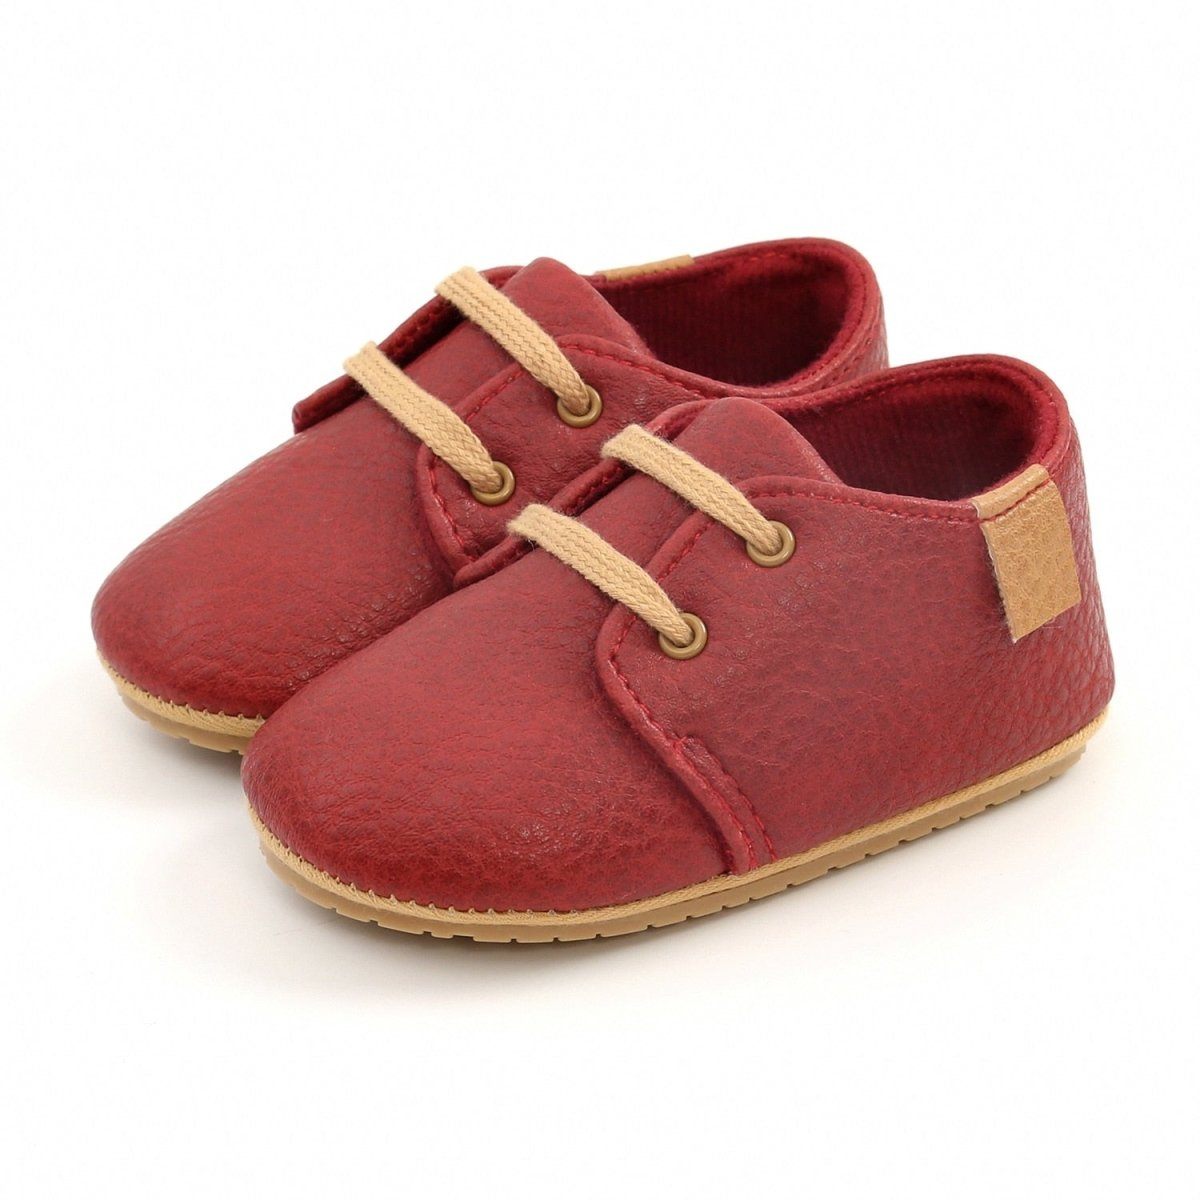 Infant Multicolor Retro Leather Shoes Infant Multicolor Retro Leather Shoes Baby Bubble Store Red 0-6 Months 